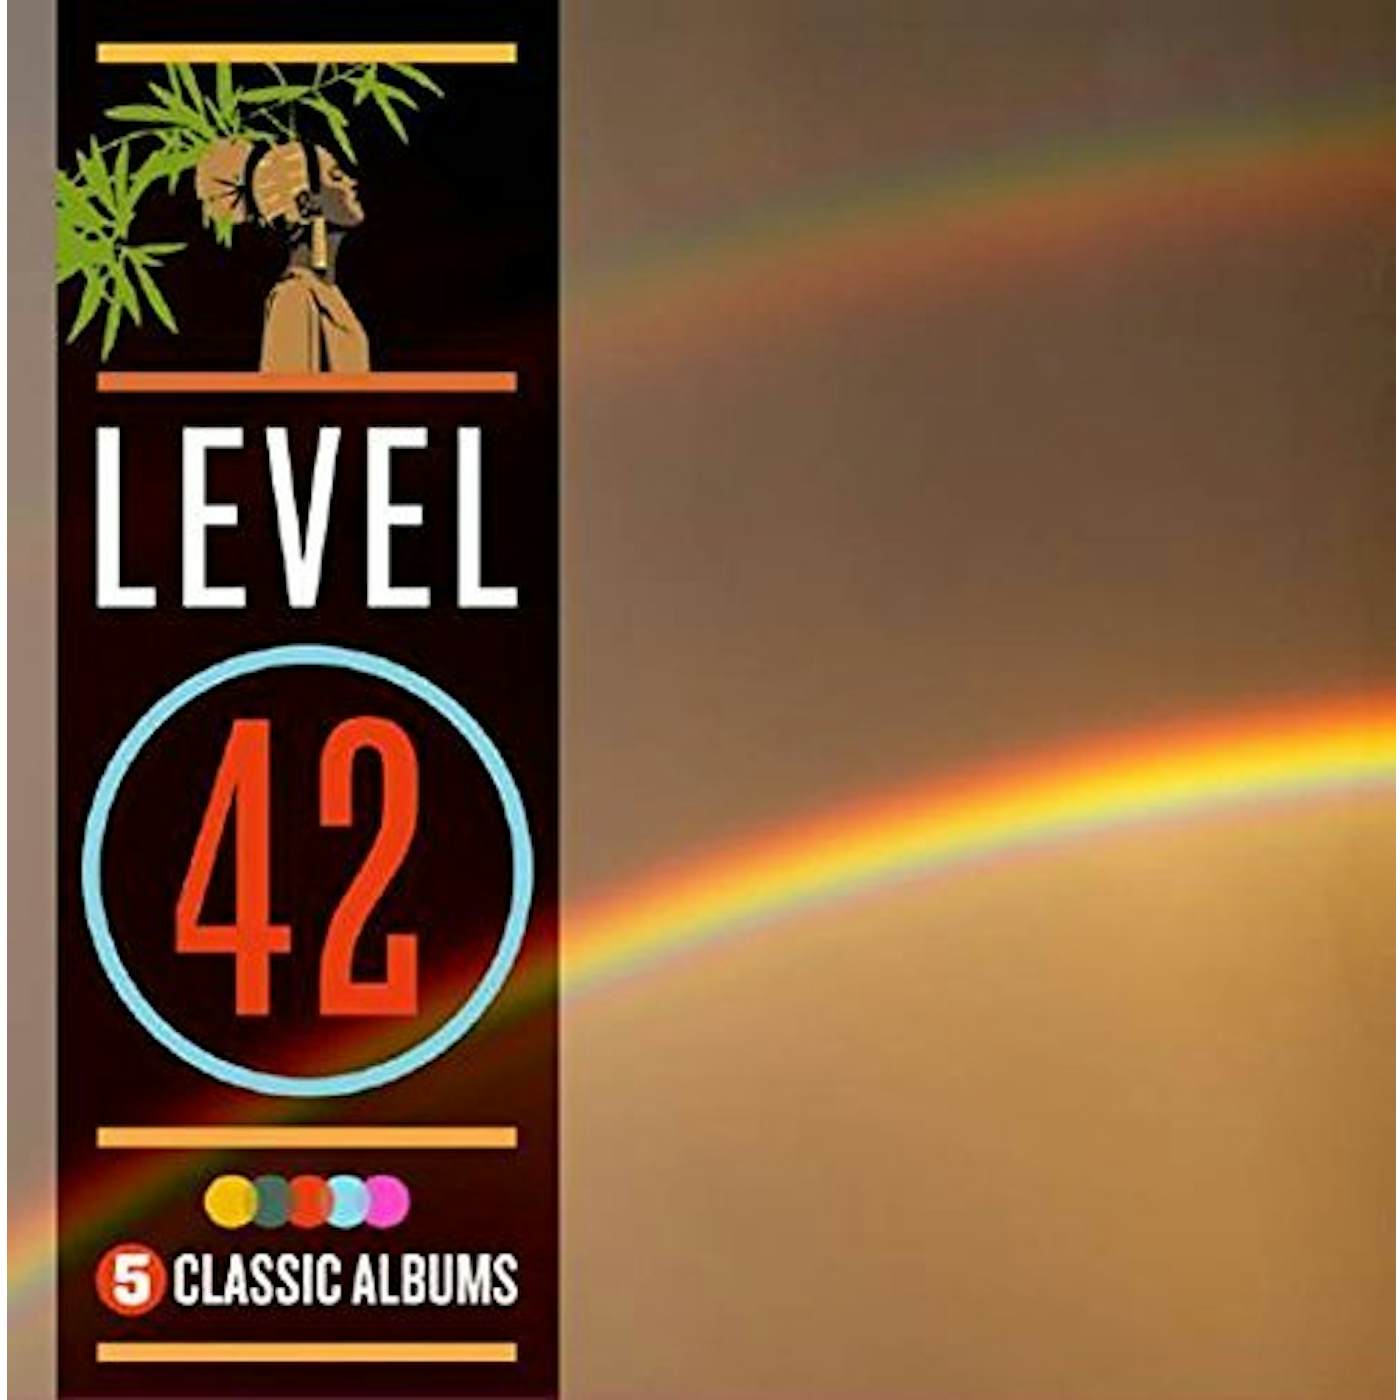 Level 42 5 CLASSIC ALBUMS CD